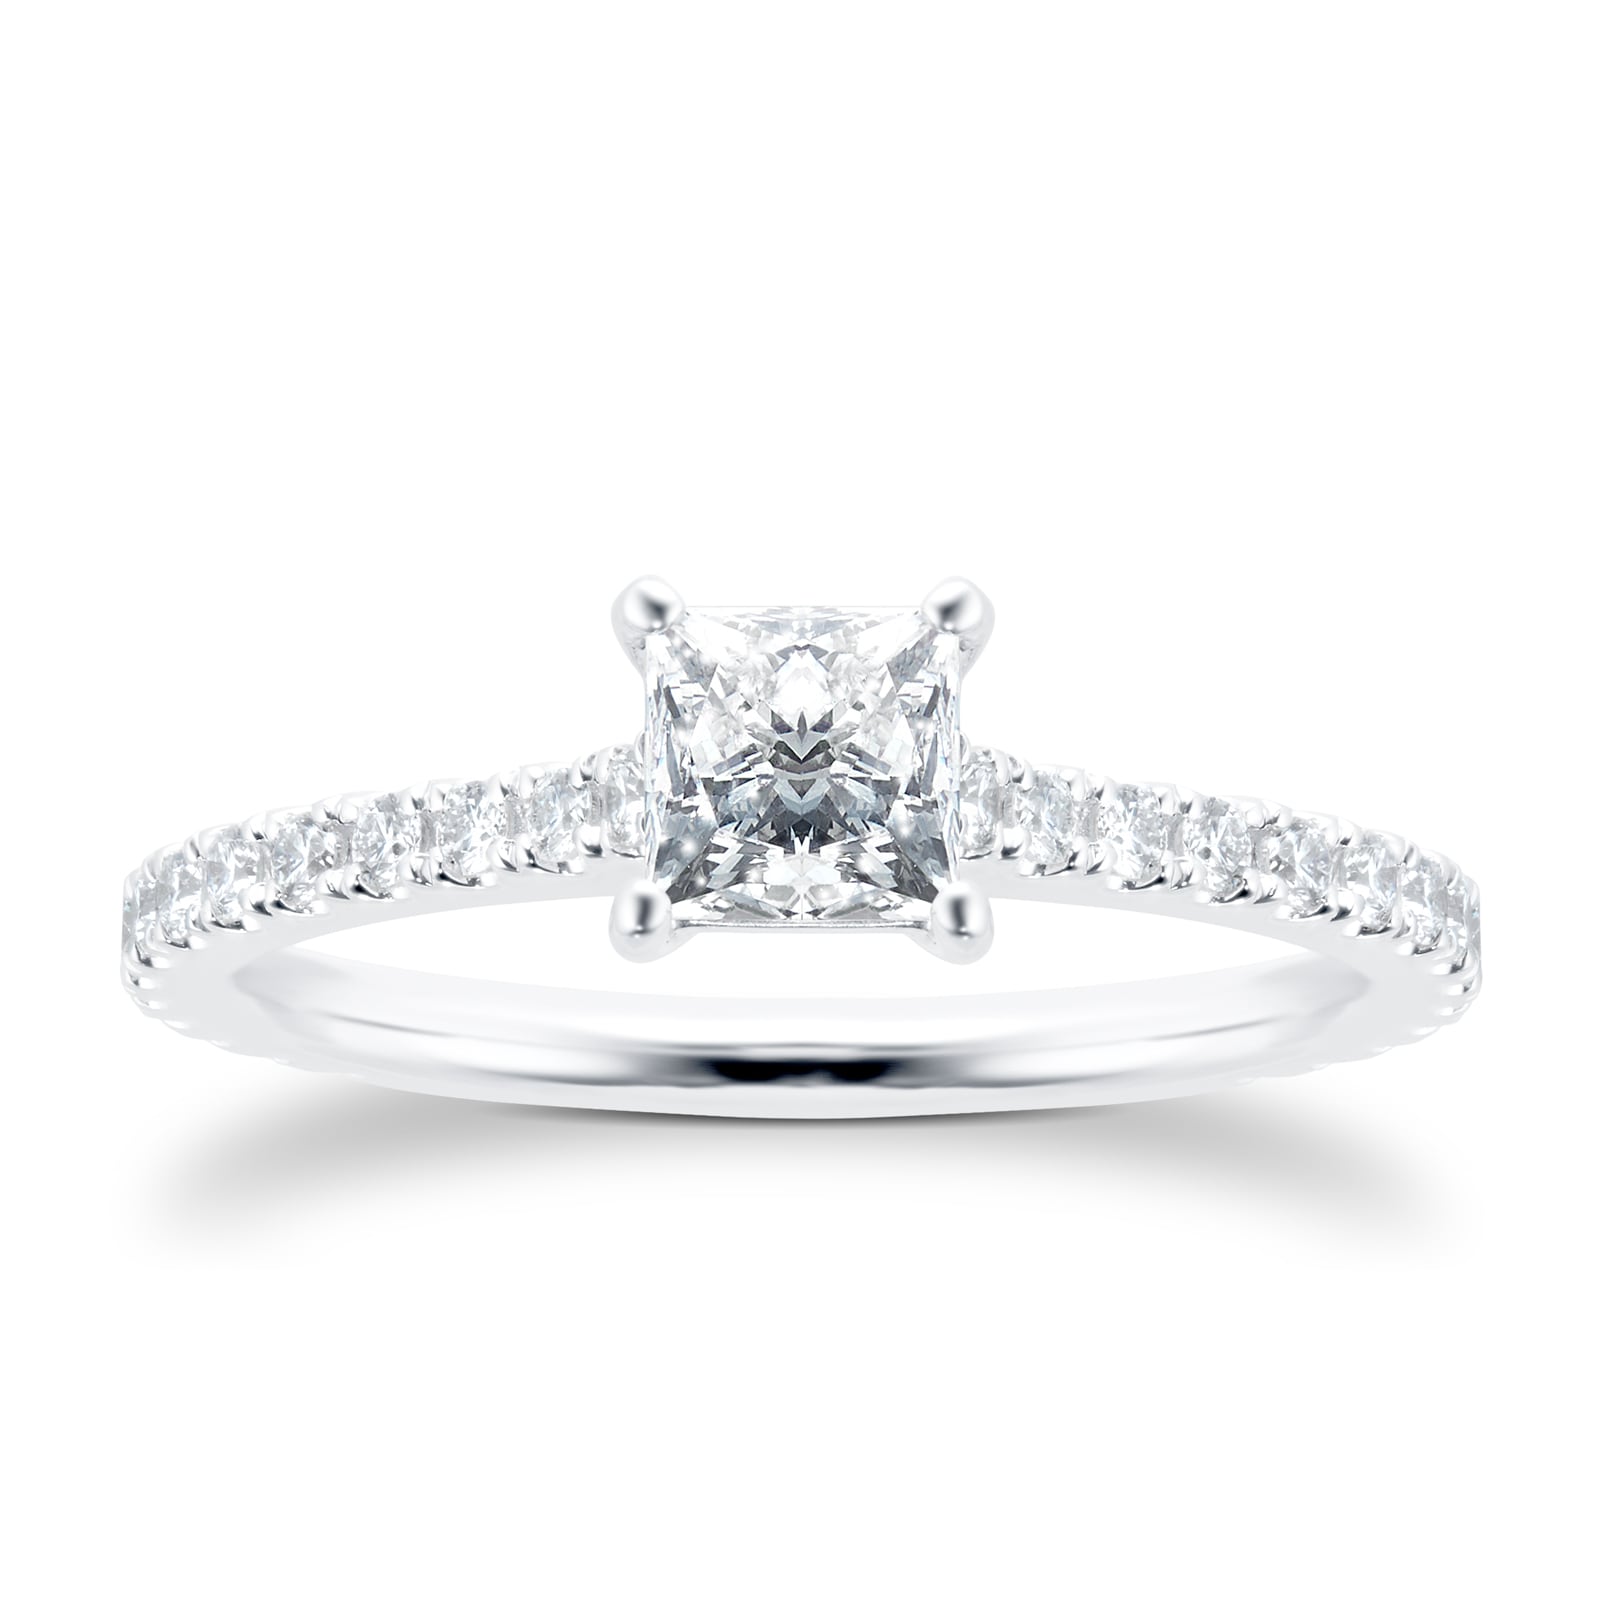 Platinum 0.81cttw Princess Cut Solitaire With Diamond Set Shoulders Engagement Ring